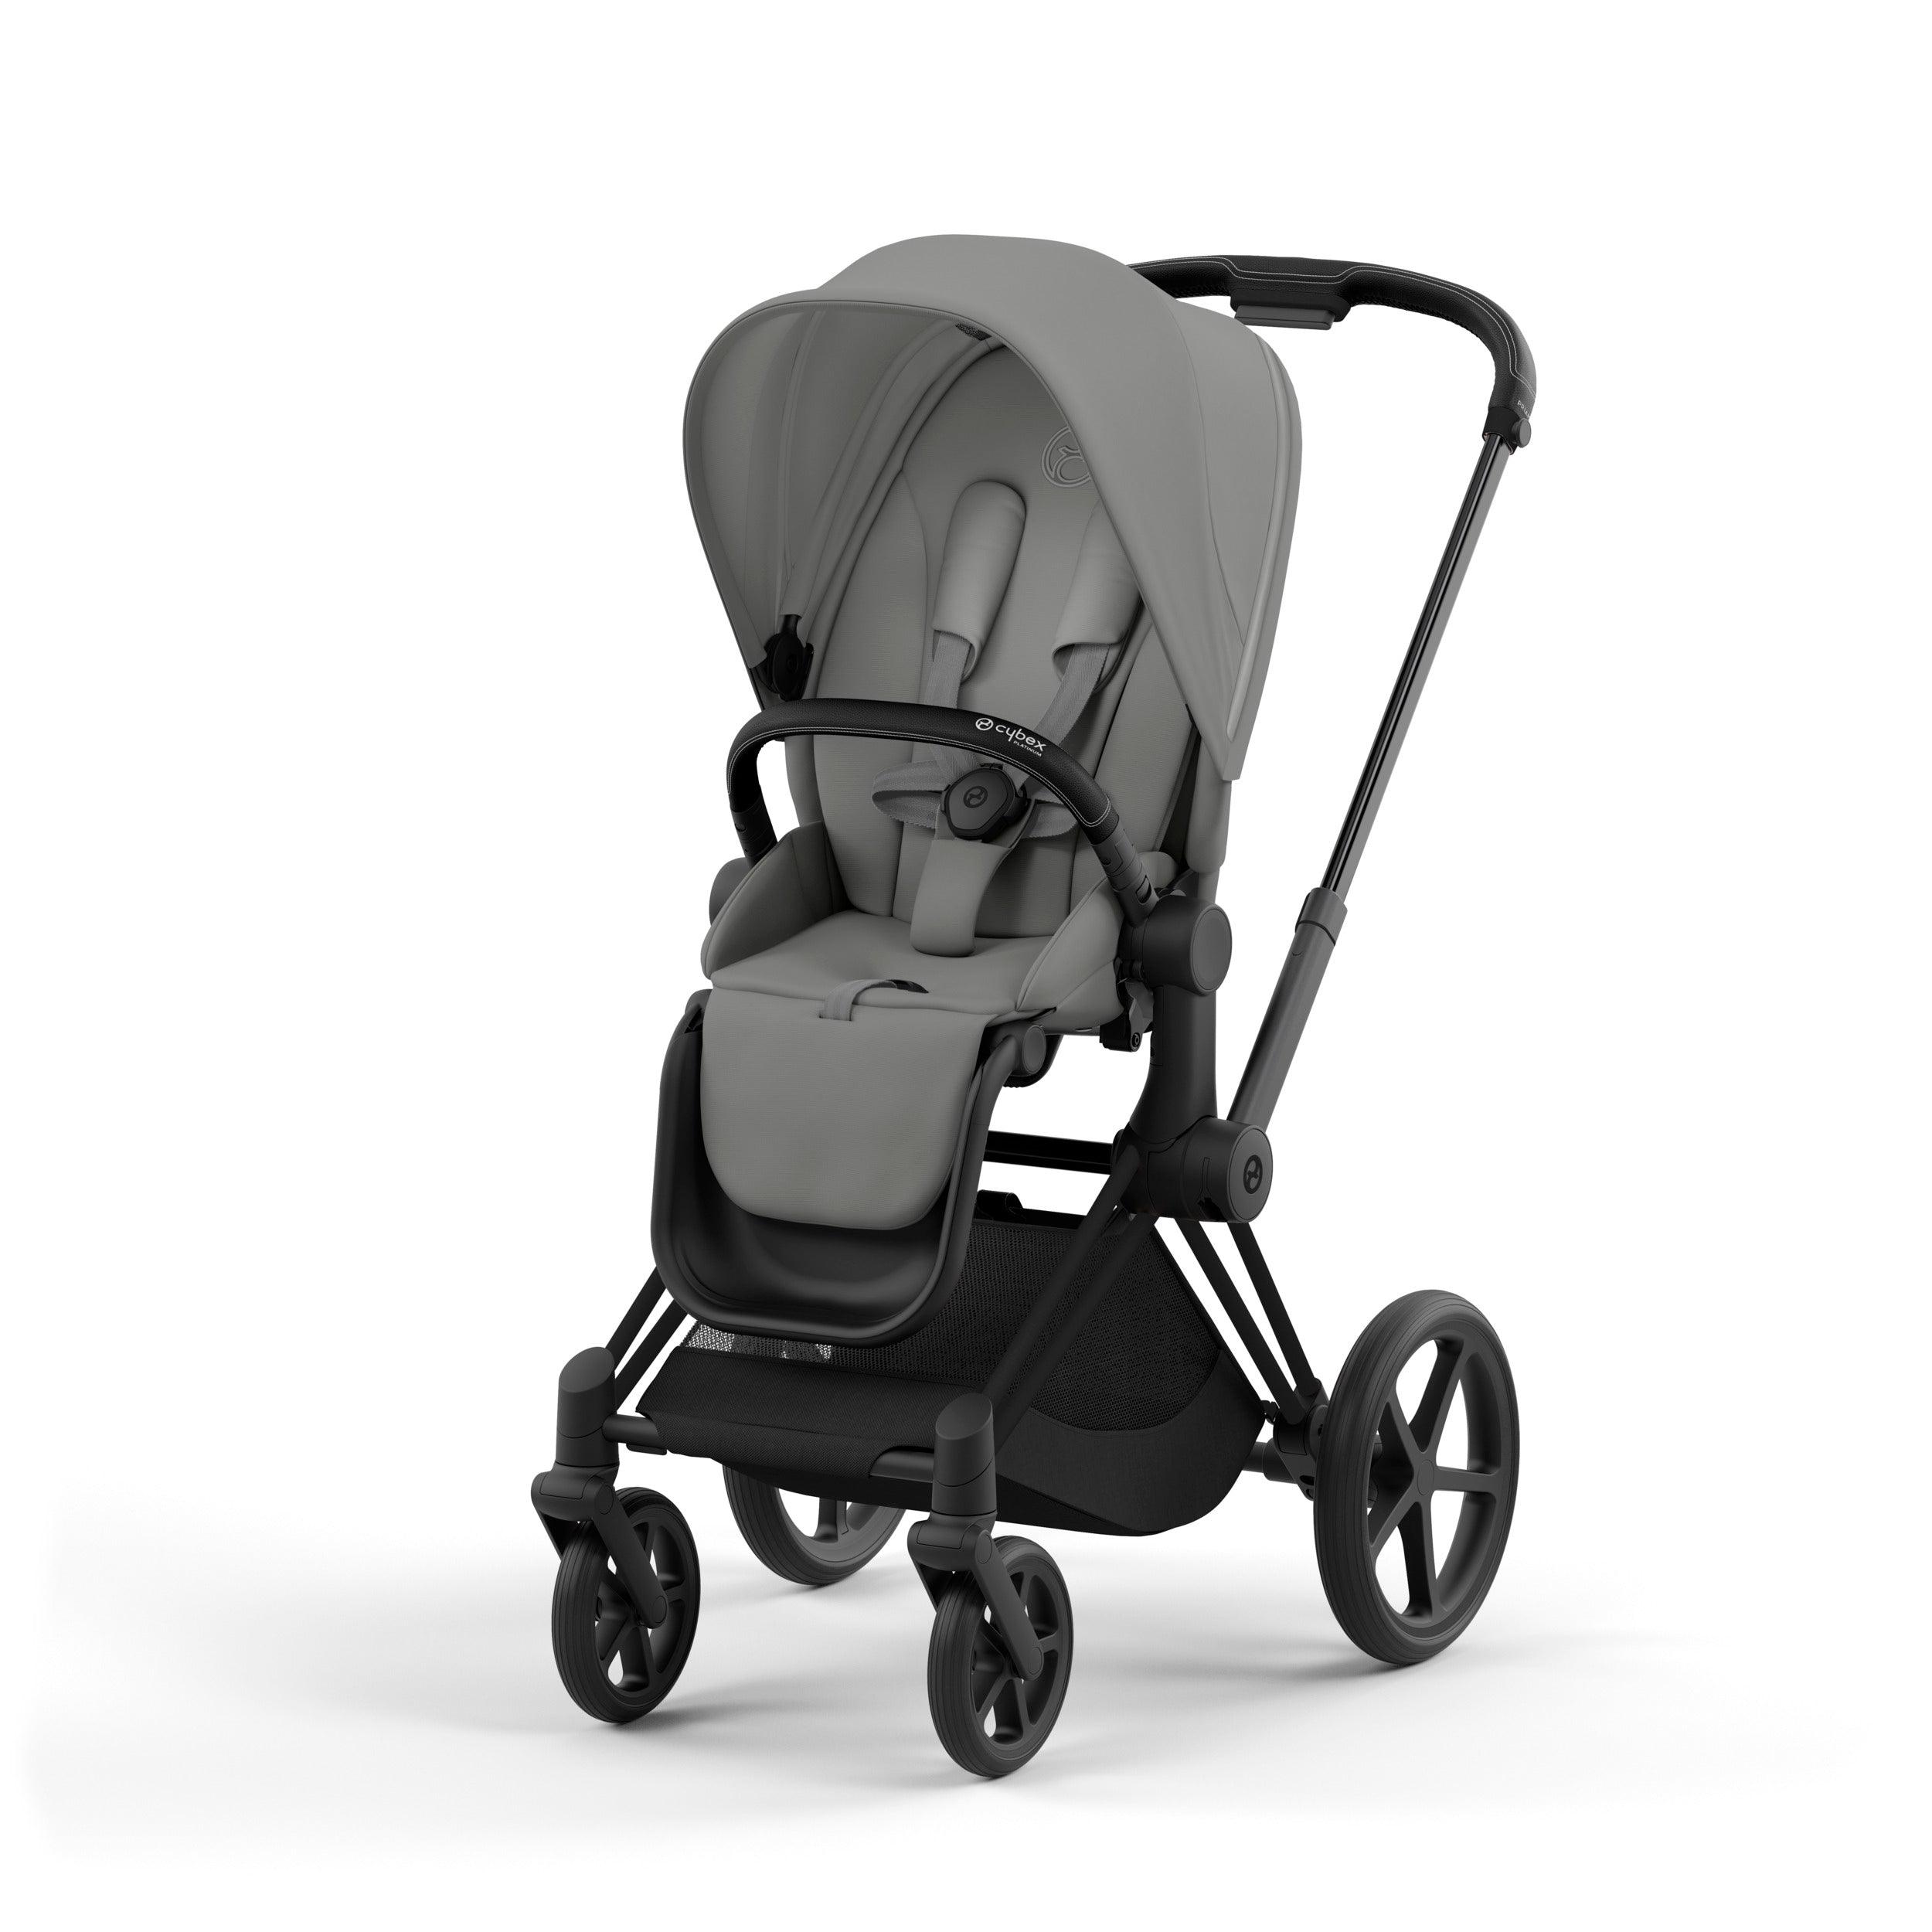 CYBEX Priam Baby Stroller in Mirage Grey & Matte Black frame